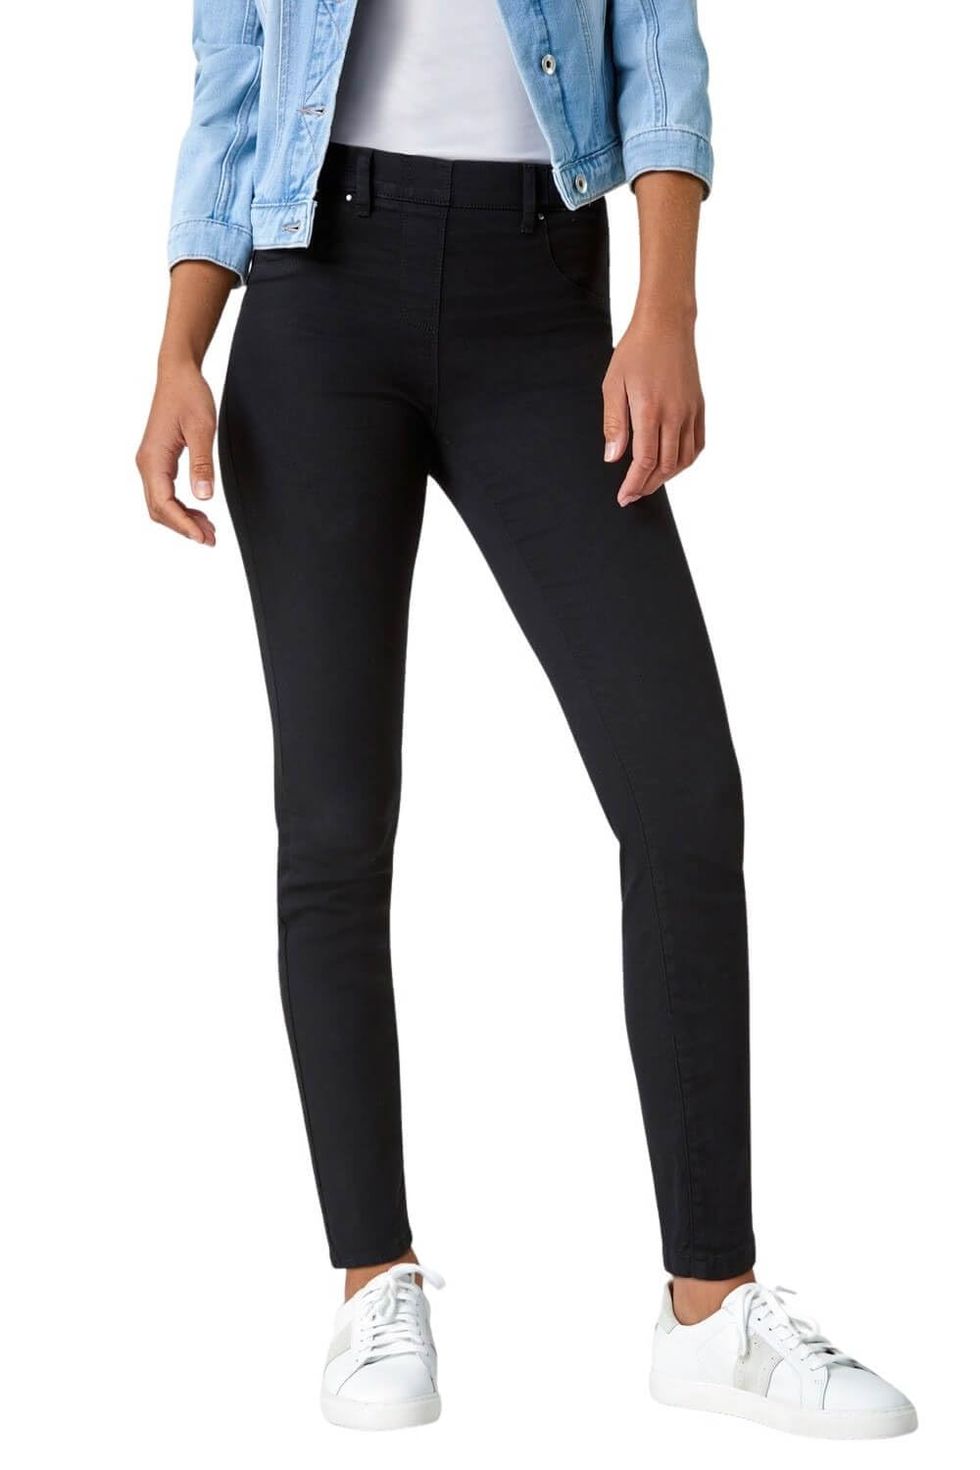 Best trouser leggings 2023: Women's jeggings and treggings